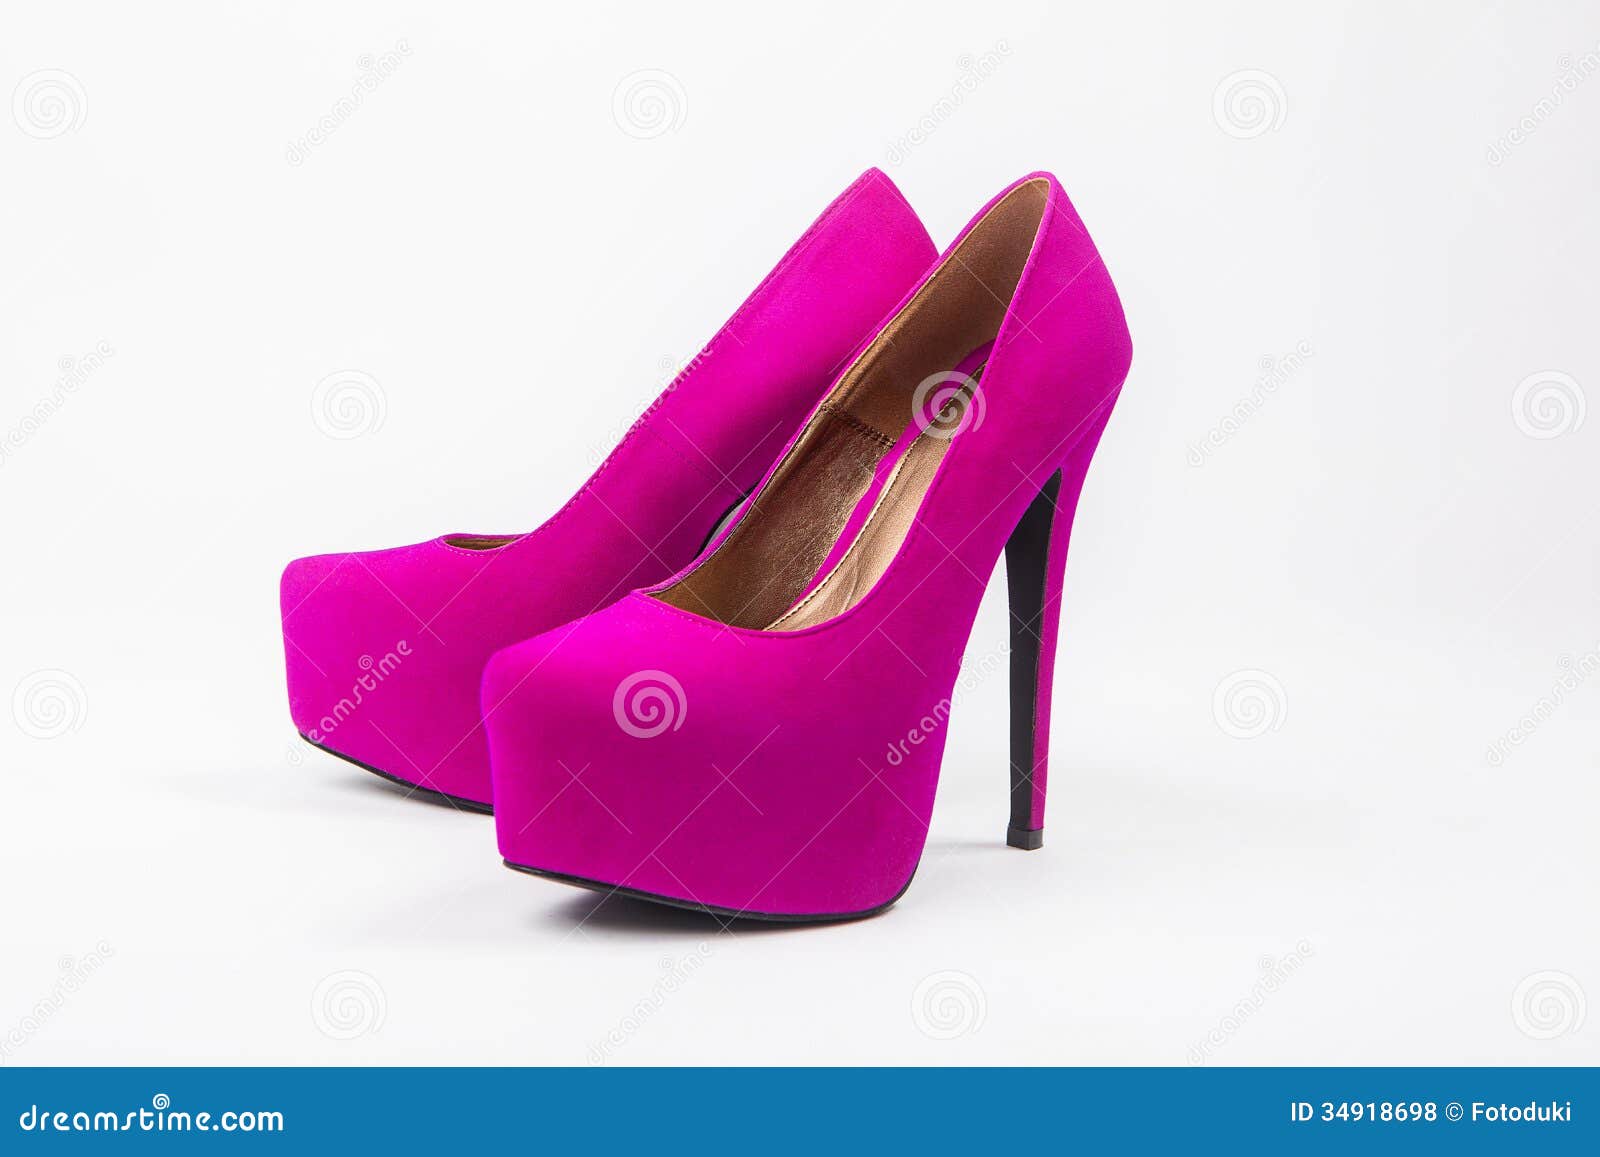 Chaussures De Luxe De Femme, Talons Hauts Photos libres de droits ...